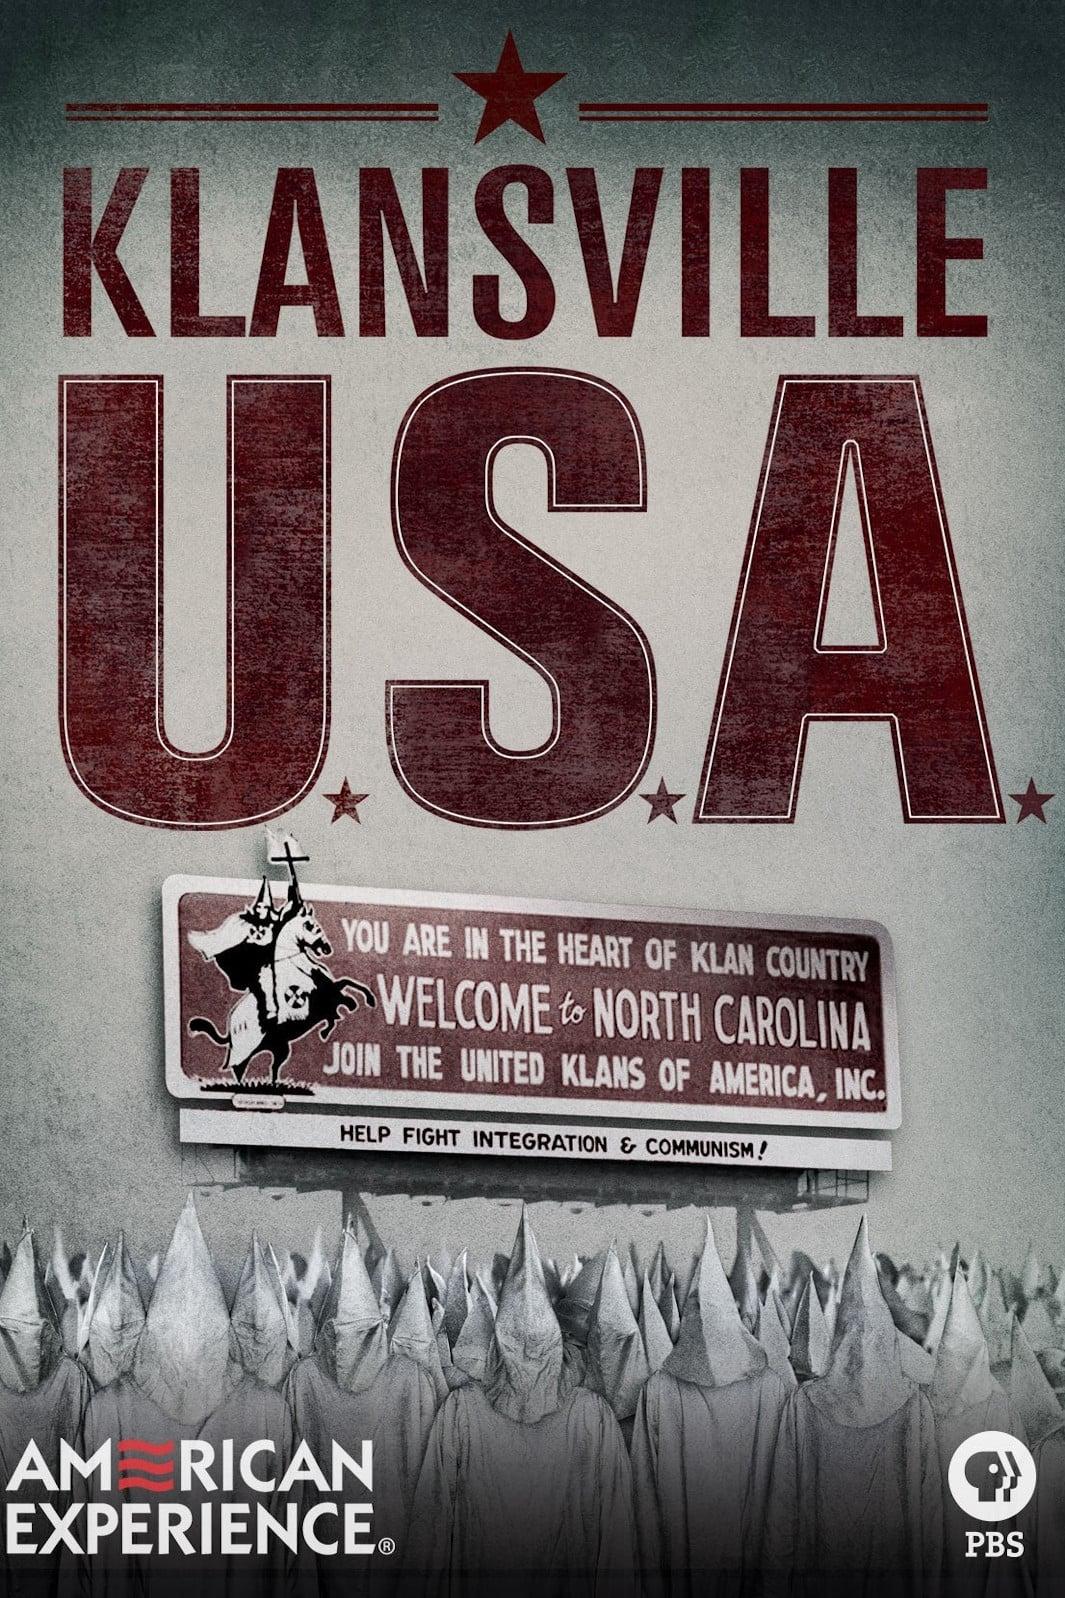 Klansville U.S.A. poster